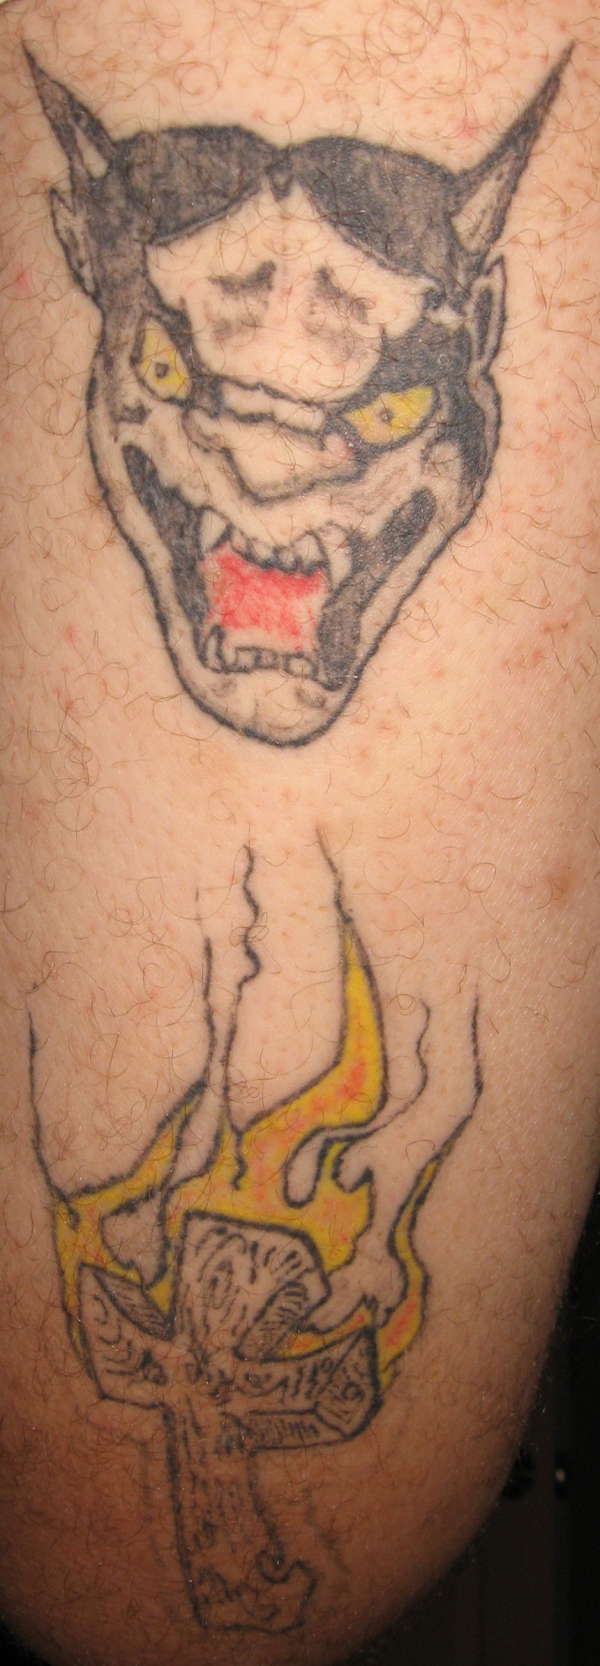 my leg.first tats i did tattoo